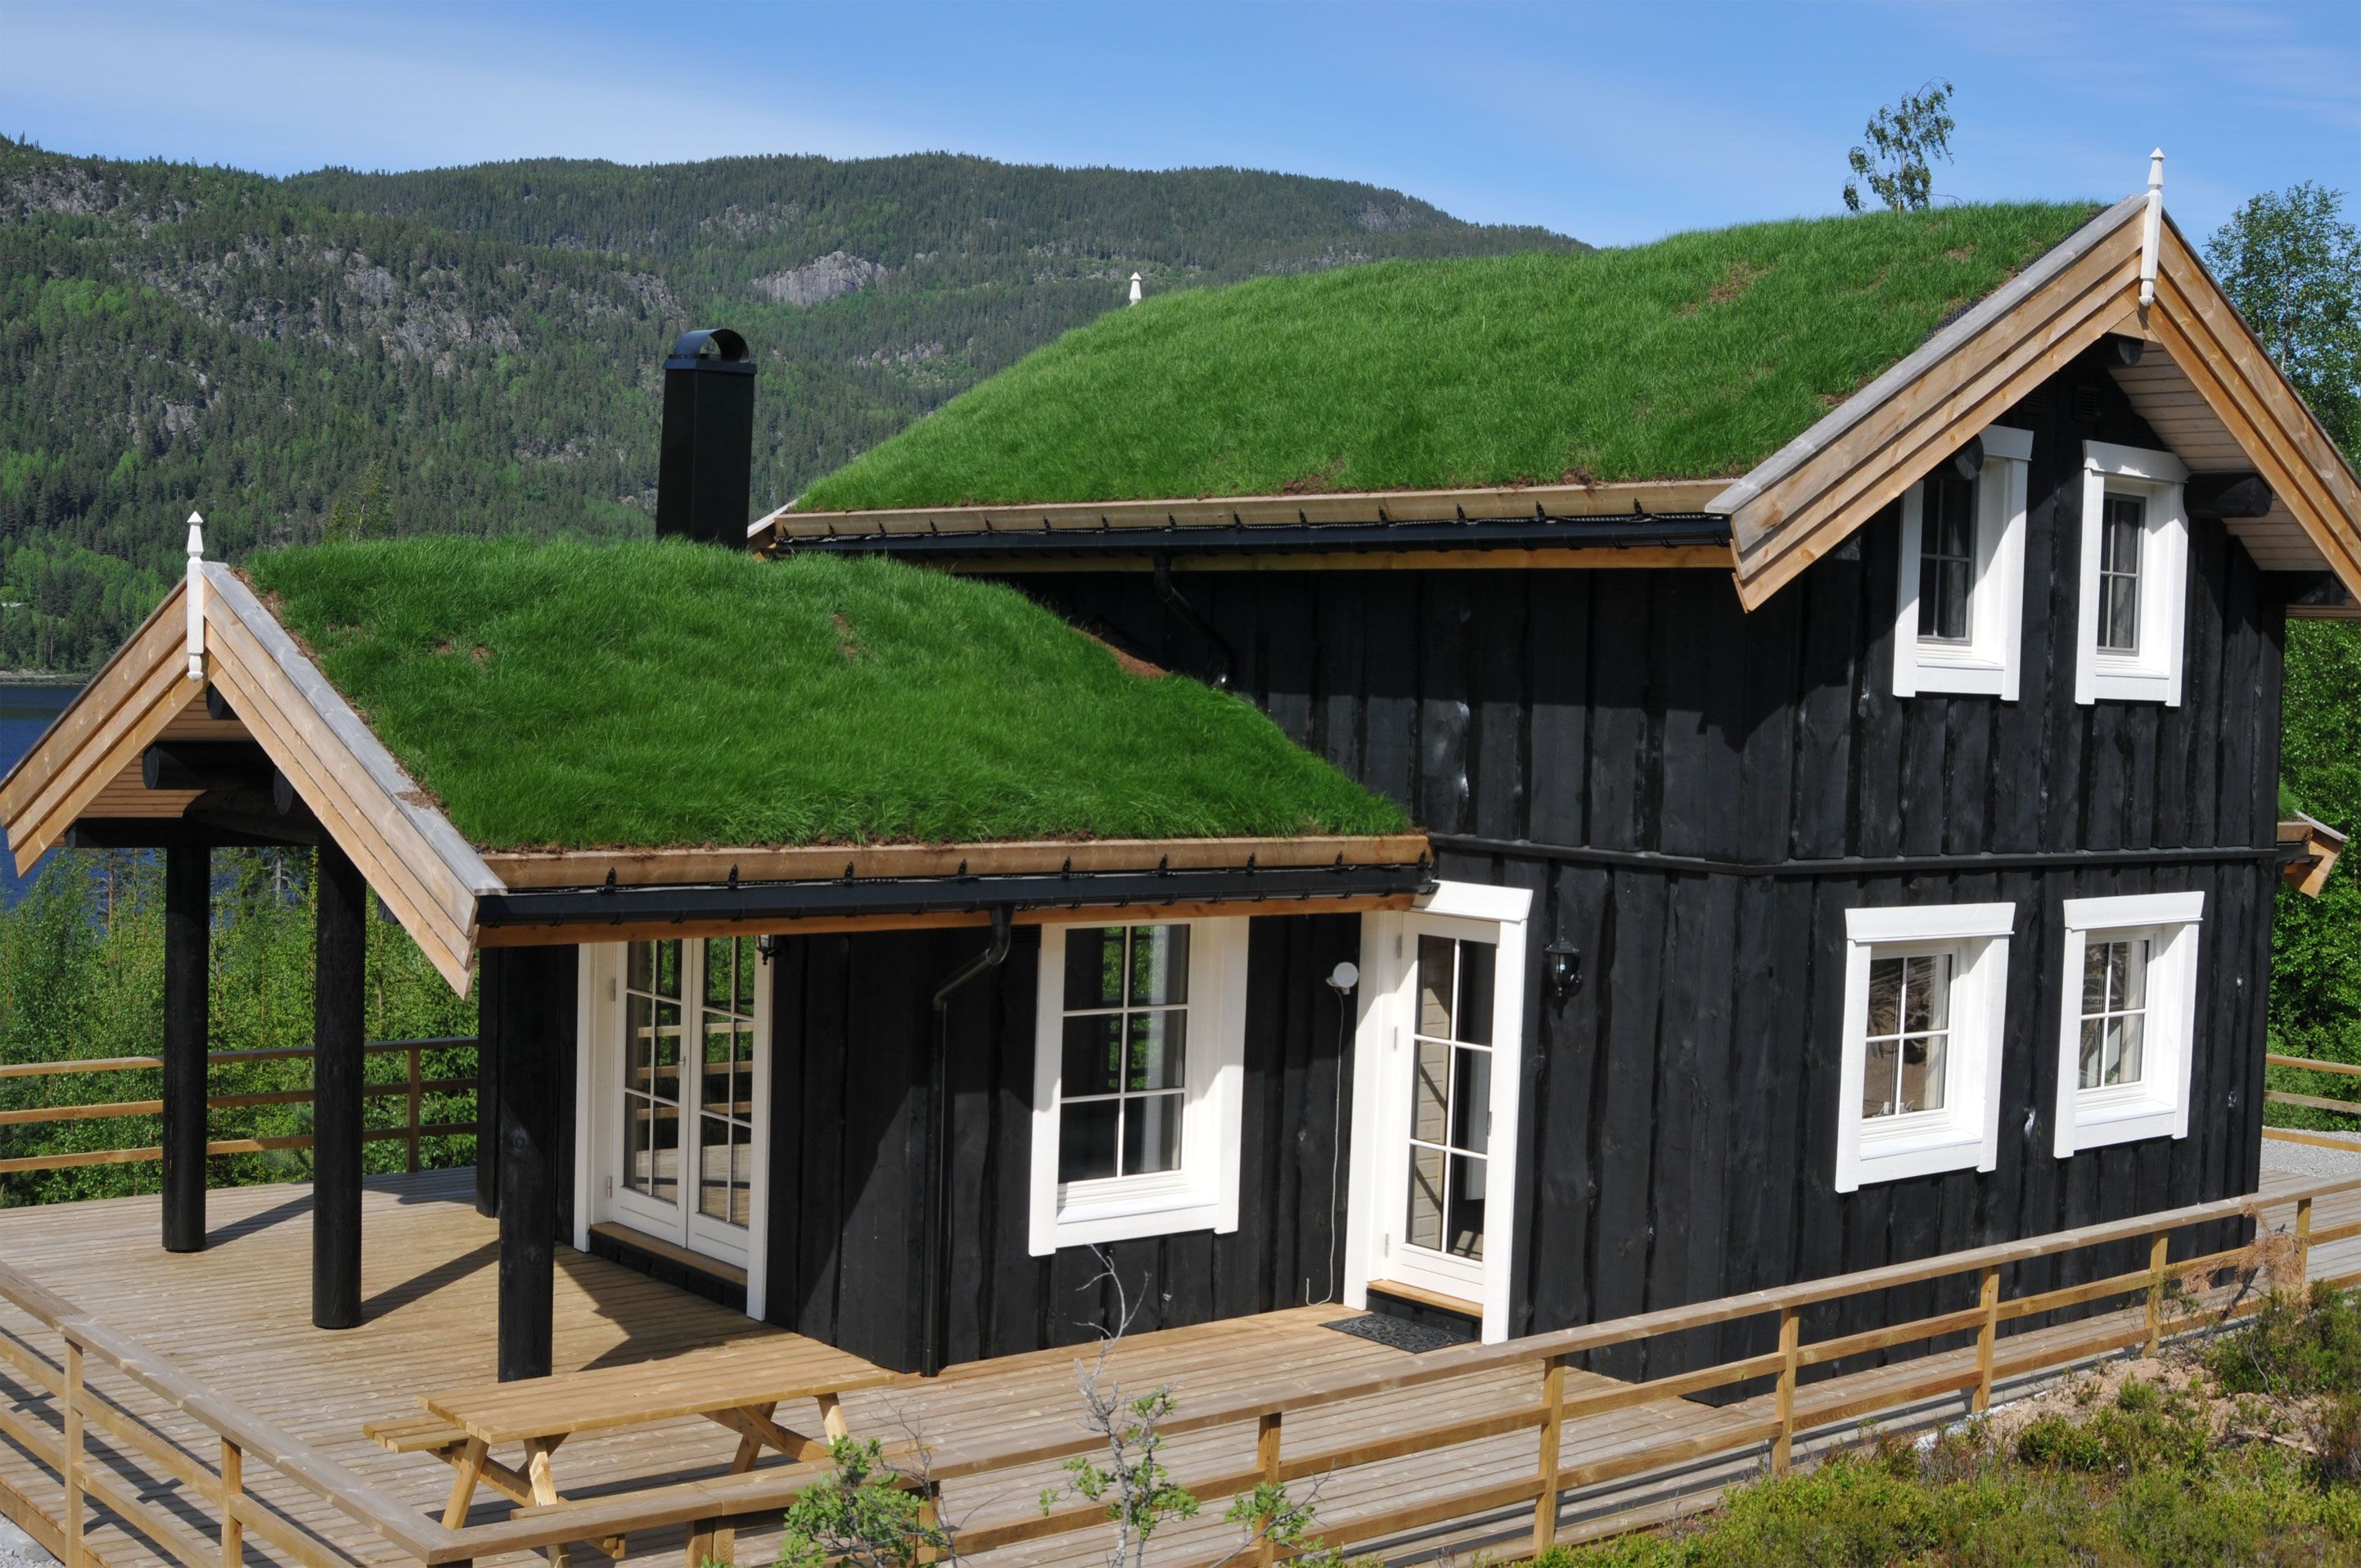 Kapper dubbel pond Vakantievilla kopen in Noorwegen | Fjord Home; Noorwegenspecialist